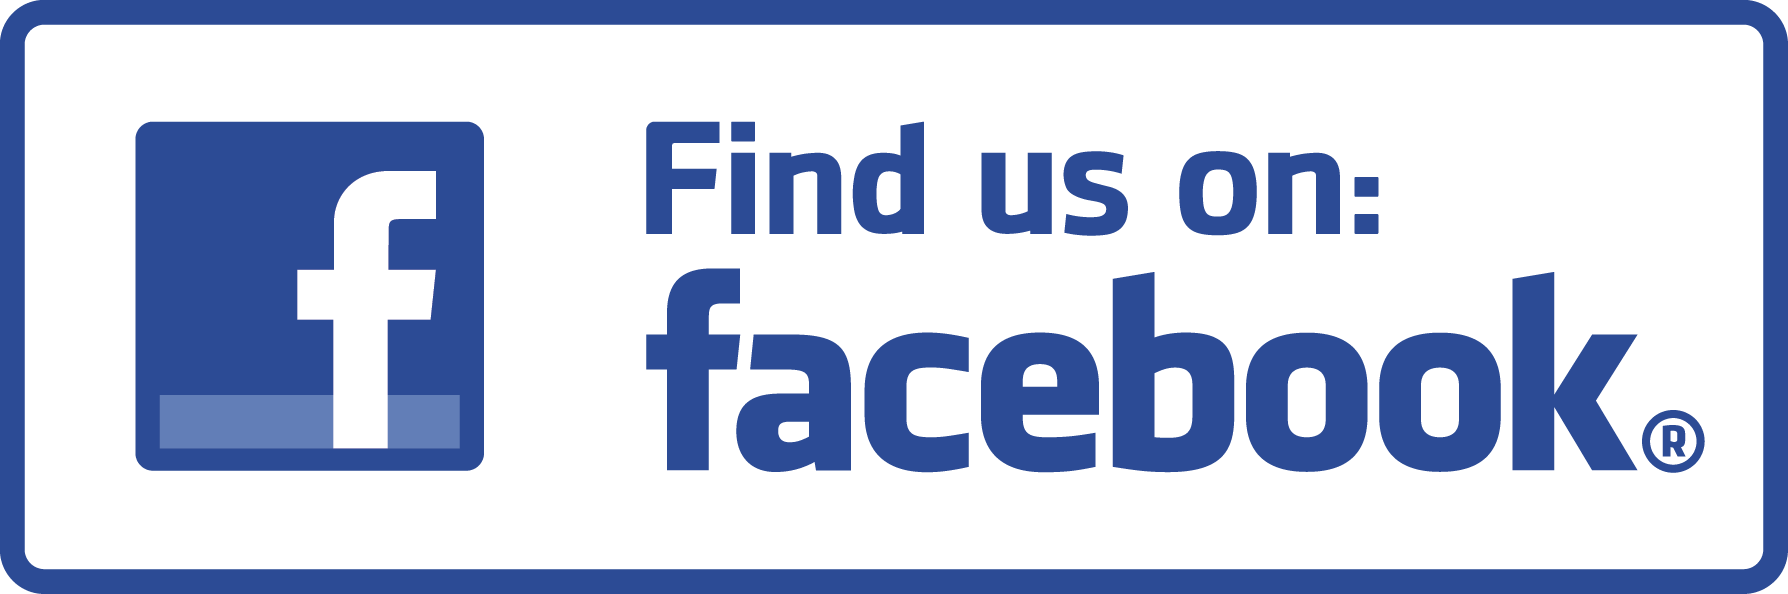 Facebook Logo Wallpaper Full HD